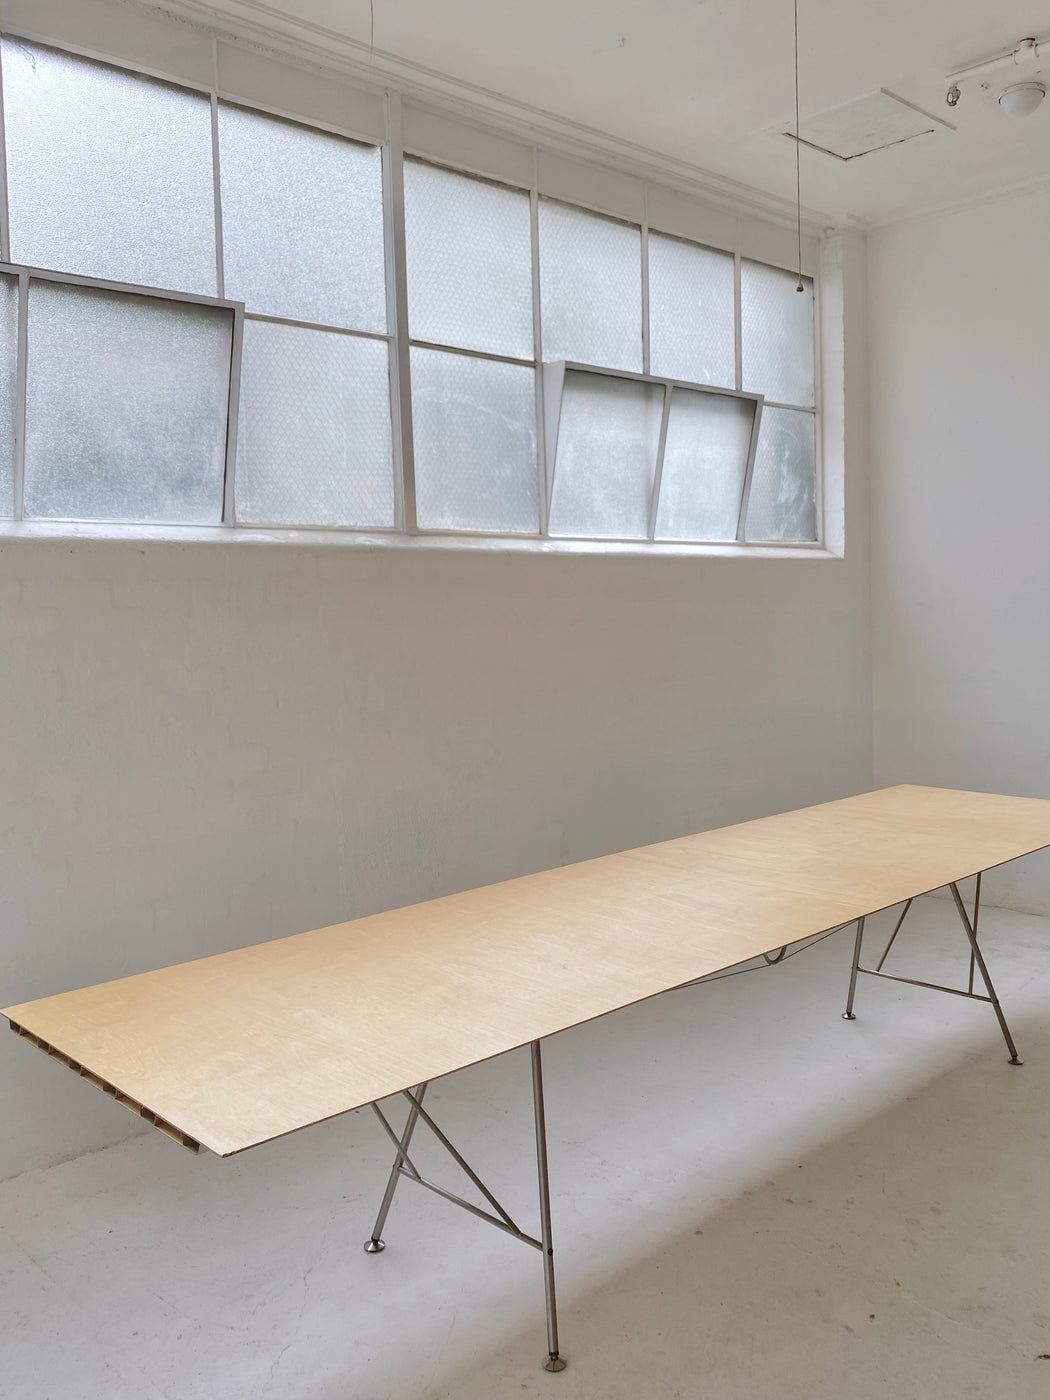 Atelier Alinea 'Unistandard' Table